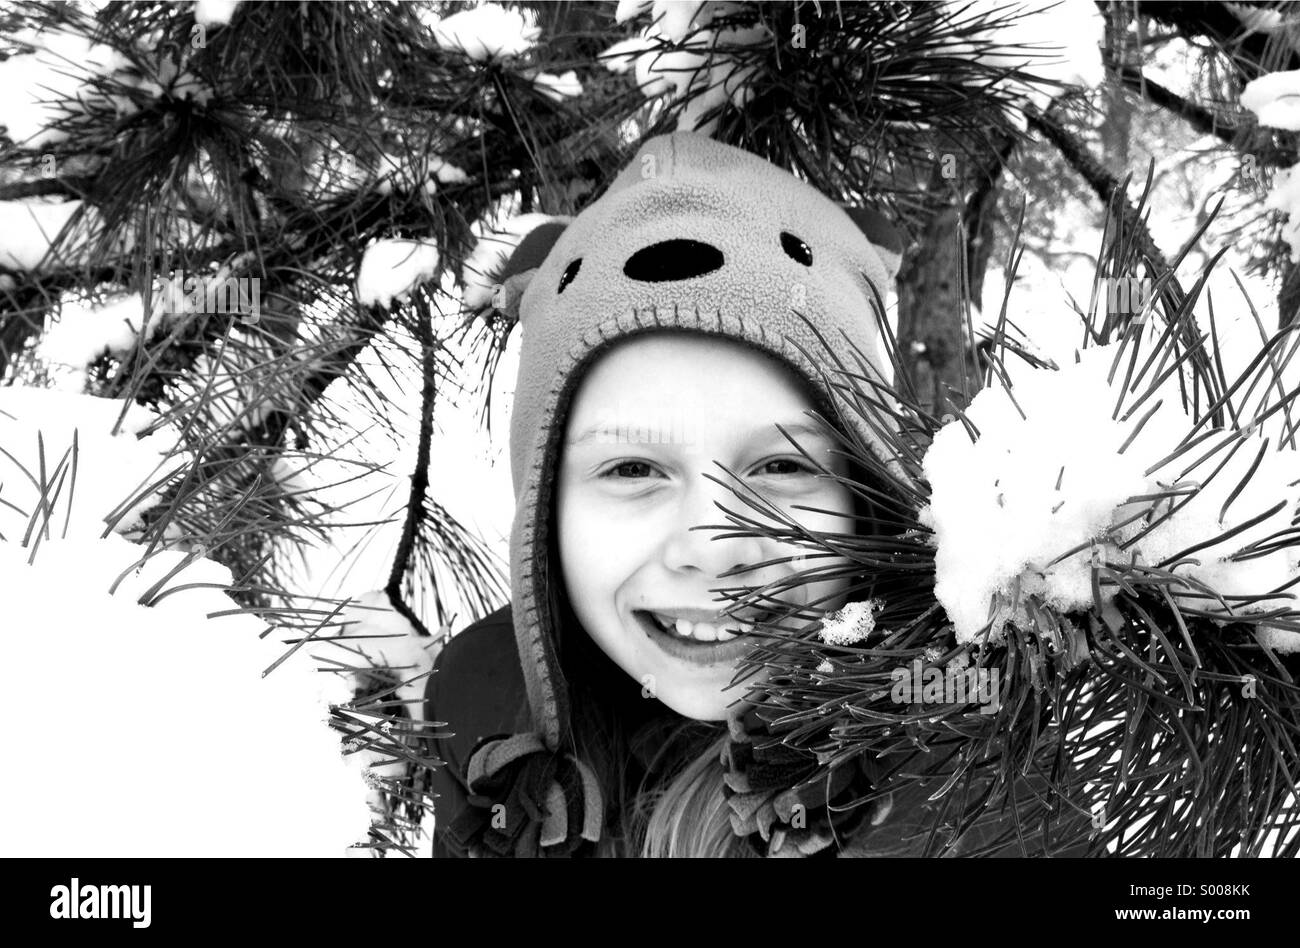 Spielen ist den frisch gefallenen Schnee, eine Mädchen späht heraus unter einem Baum. Stockfoto